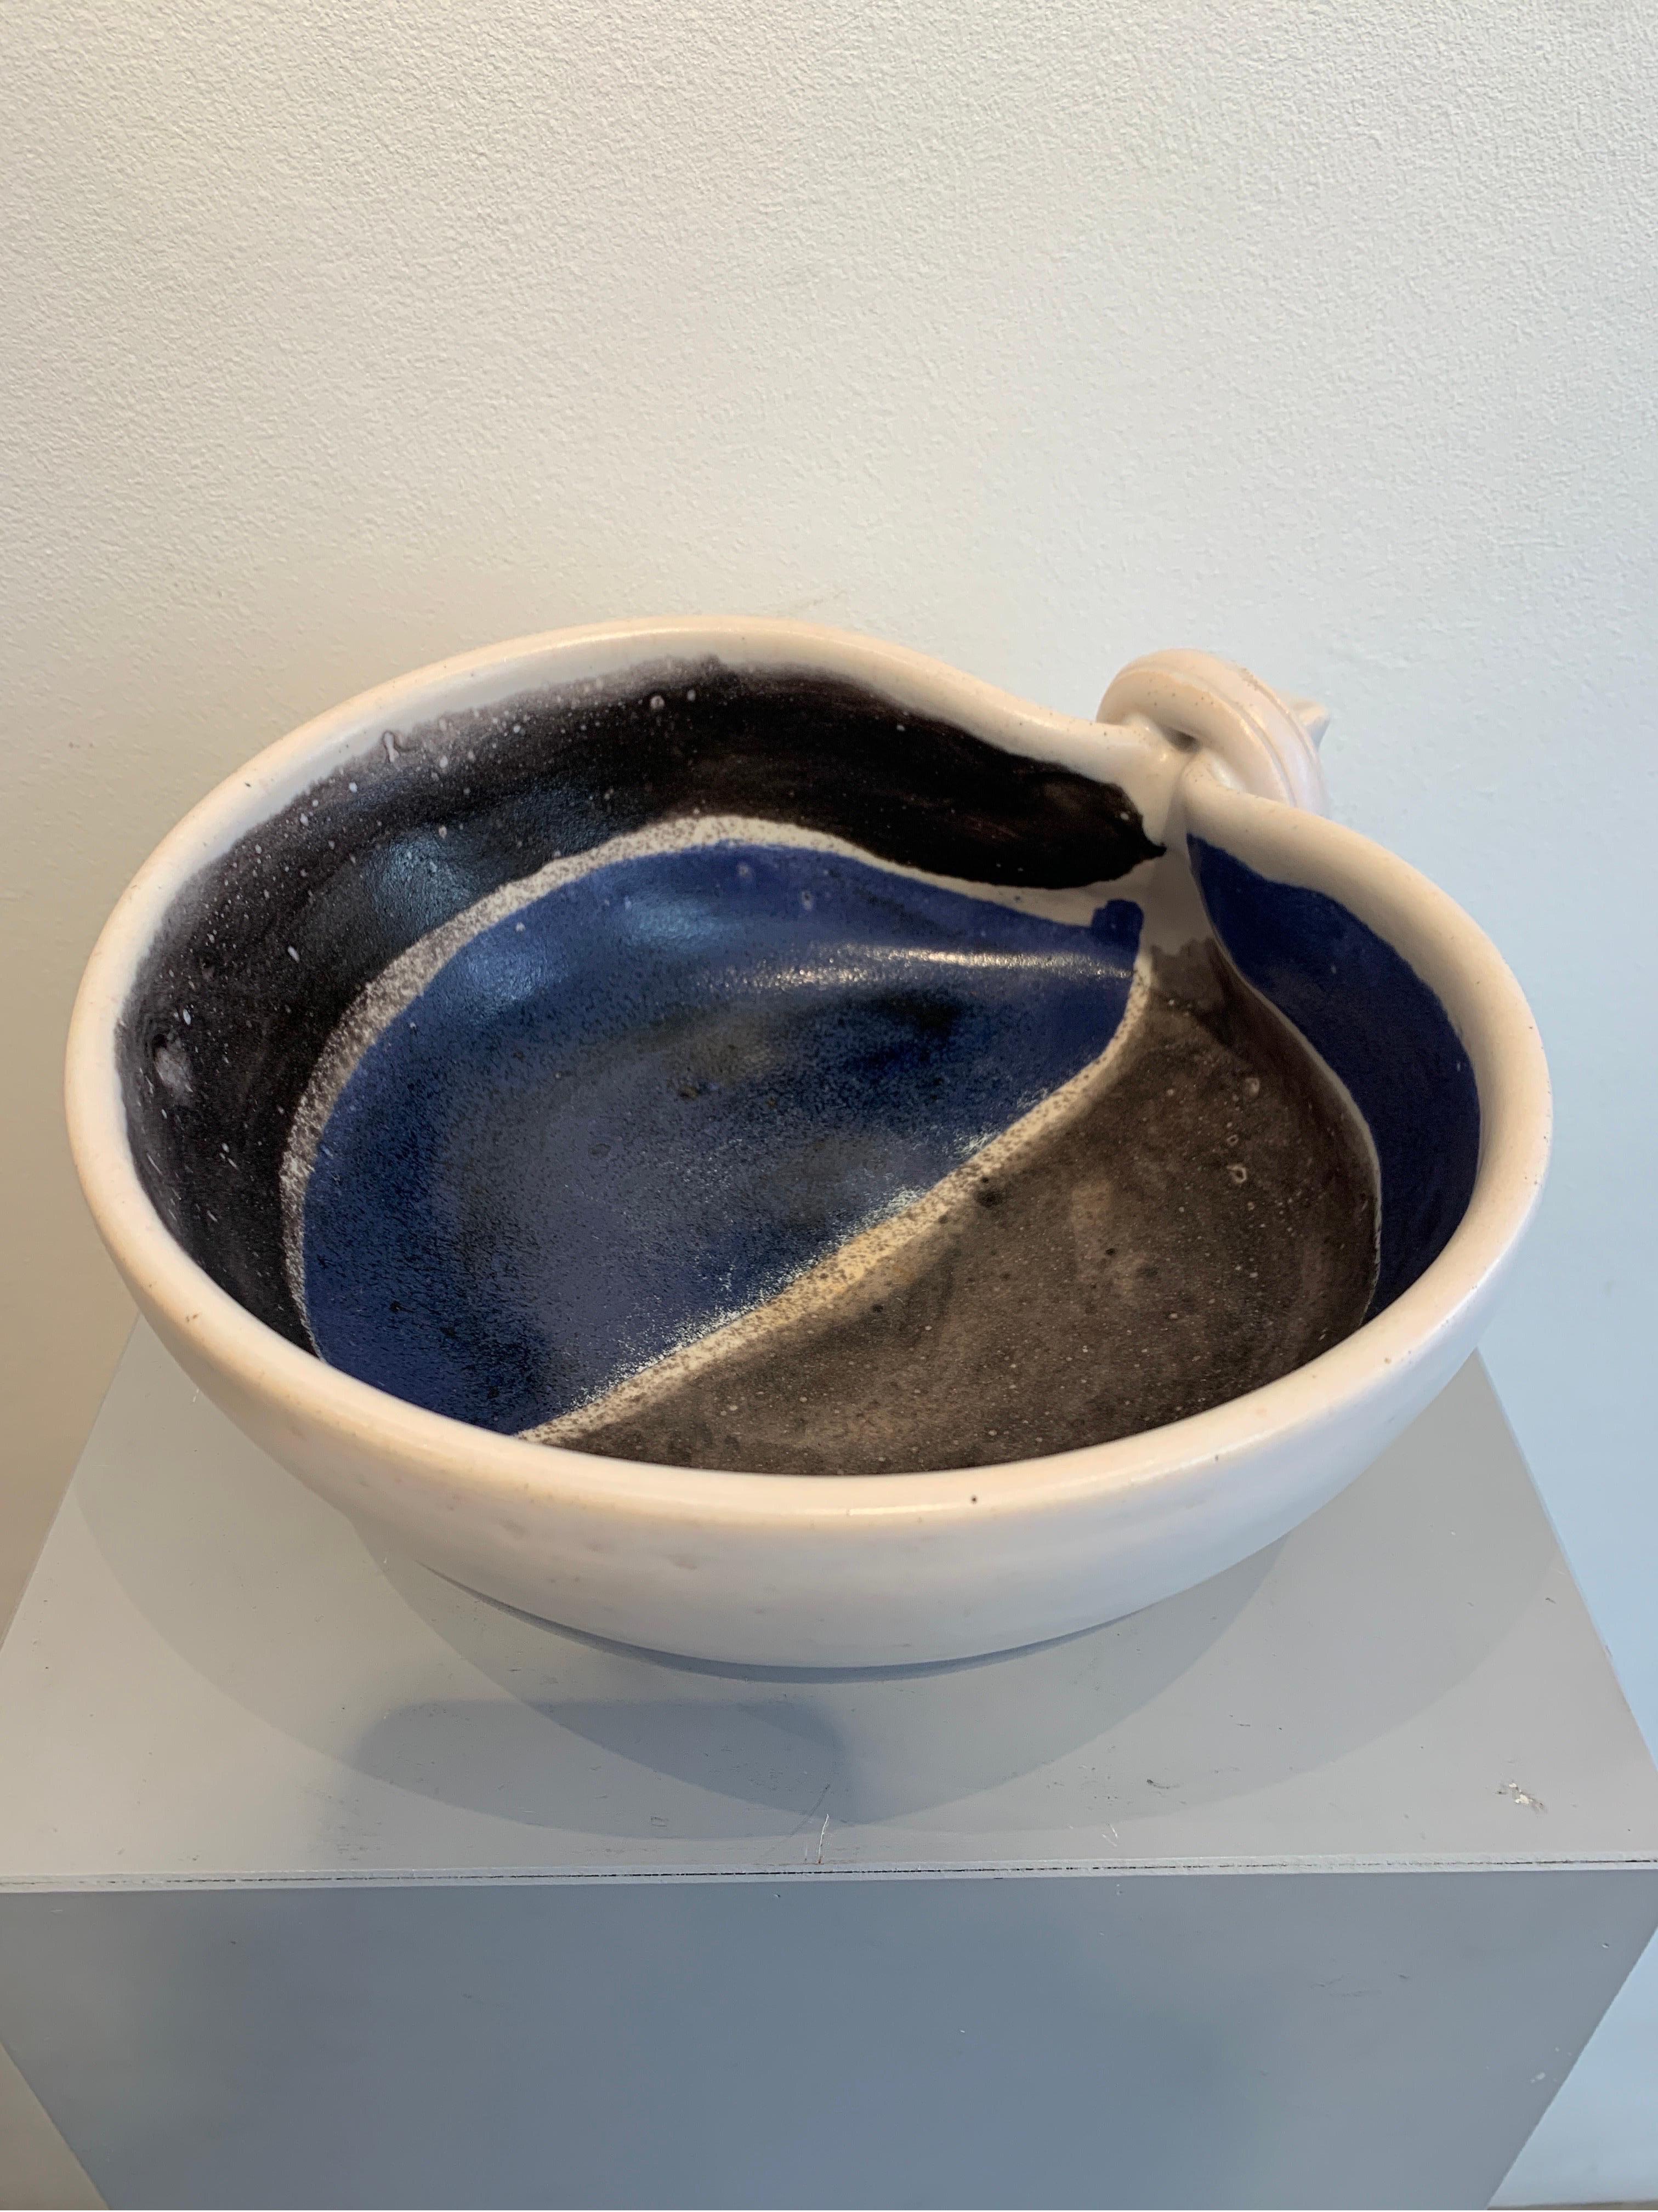 Mado Jolain ist ein renommierter französischer Keramiker, der in den 1950er Jahren tätig war. Die vorliegende Vase ist aus Steingut gefertigt und cremefarben emailliert. Das Dekor ist eine Abstraktion in Schwarz- und Blautönen. Sie gilt als einer